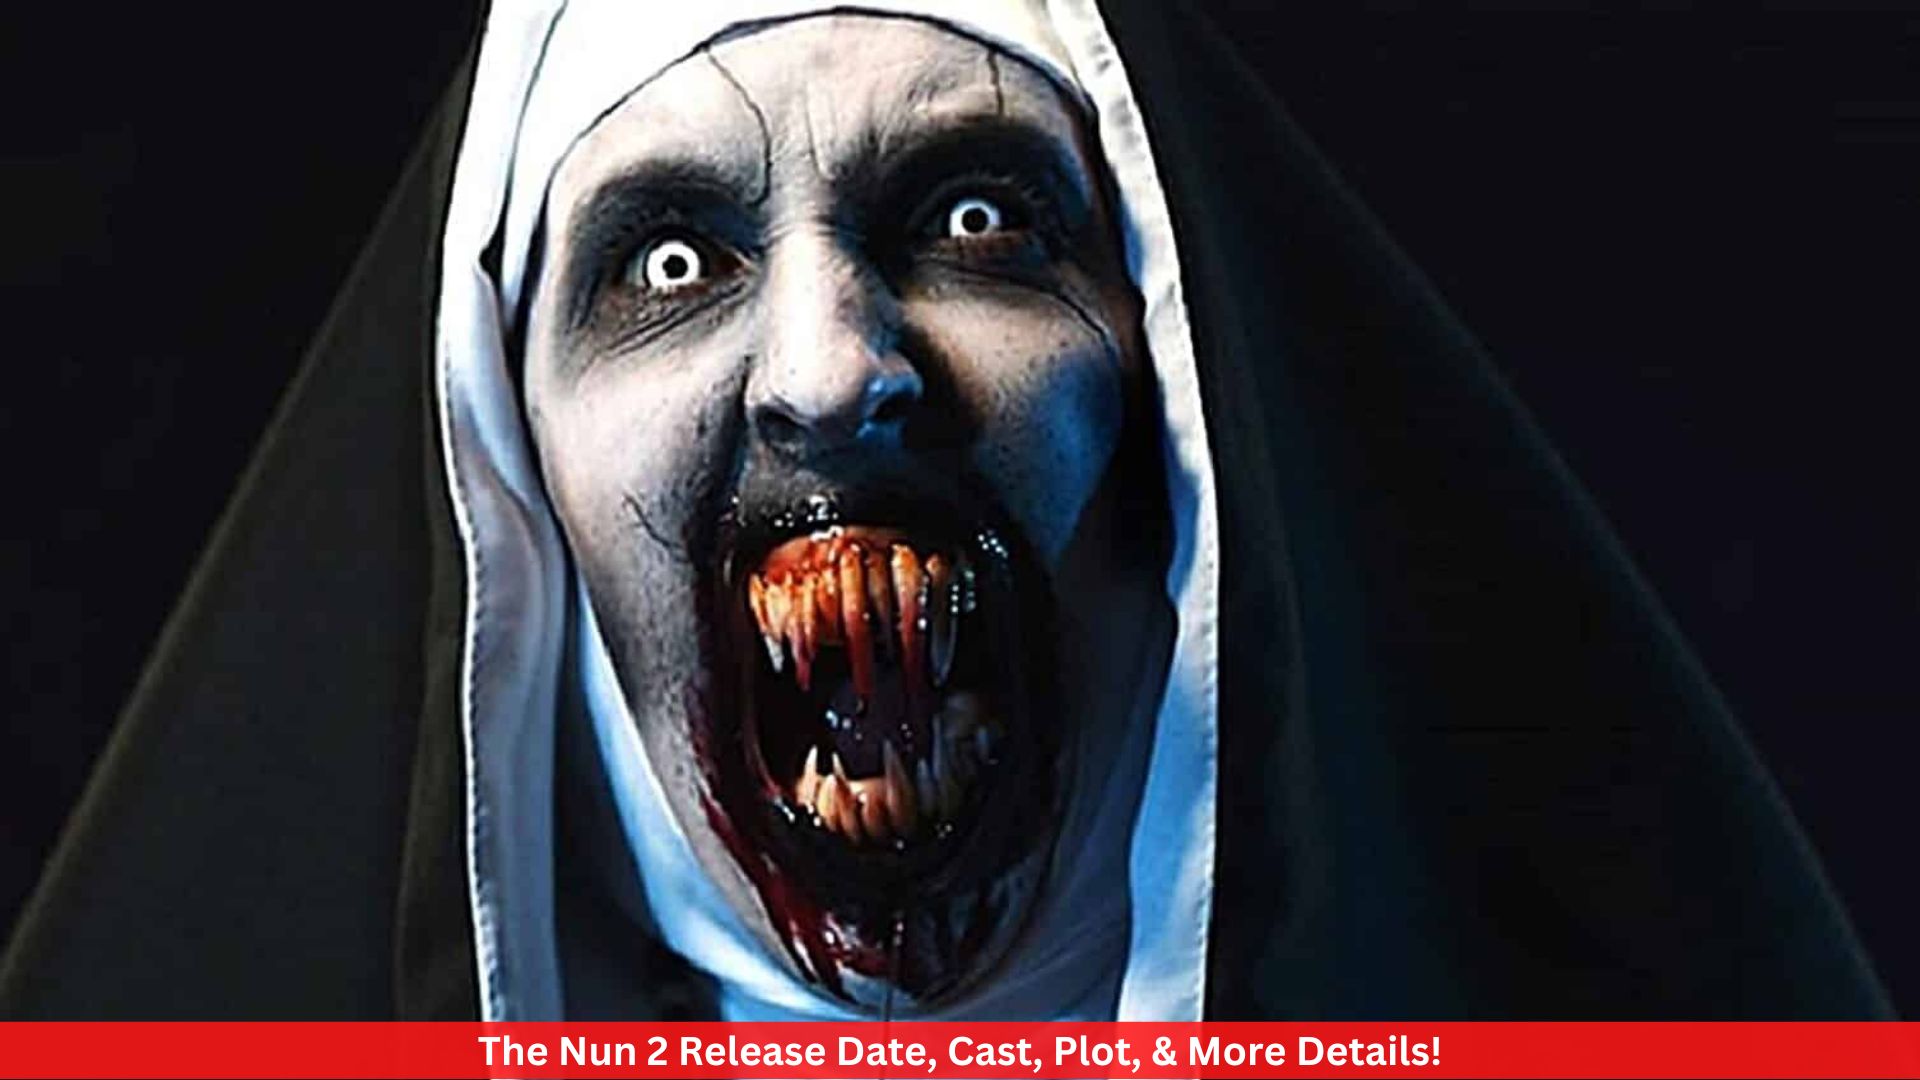 The Nun 2 Release Date, Cast, Plot, & More Details!